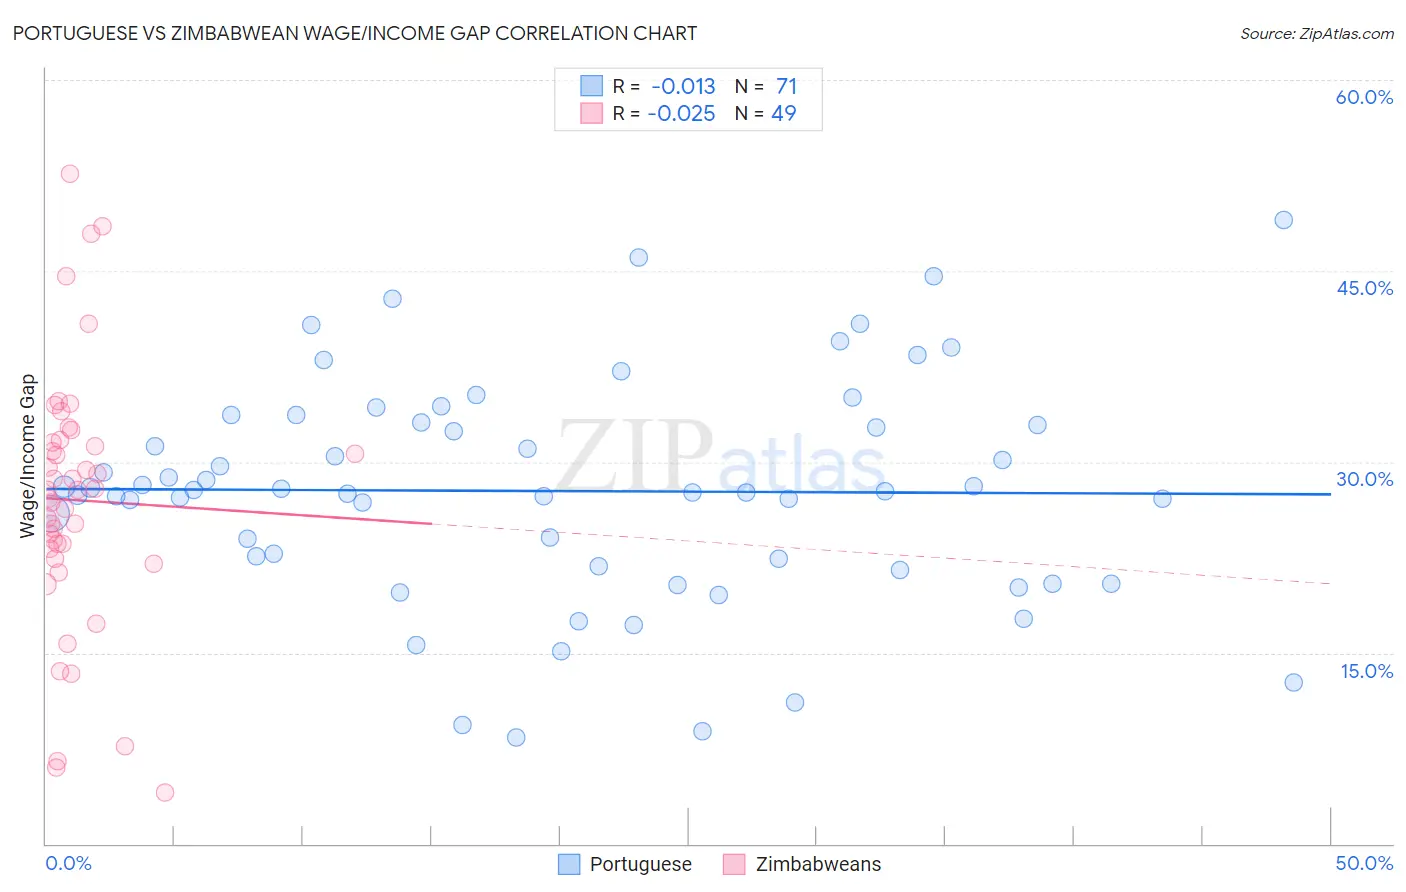 Portuguese vs Zimbabwean Wage/Income Gap